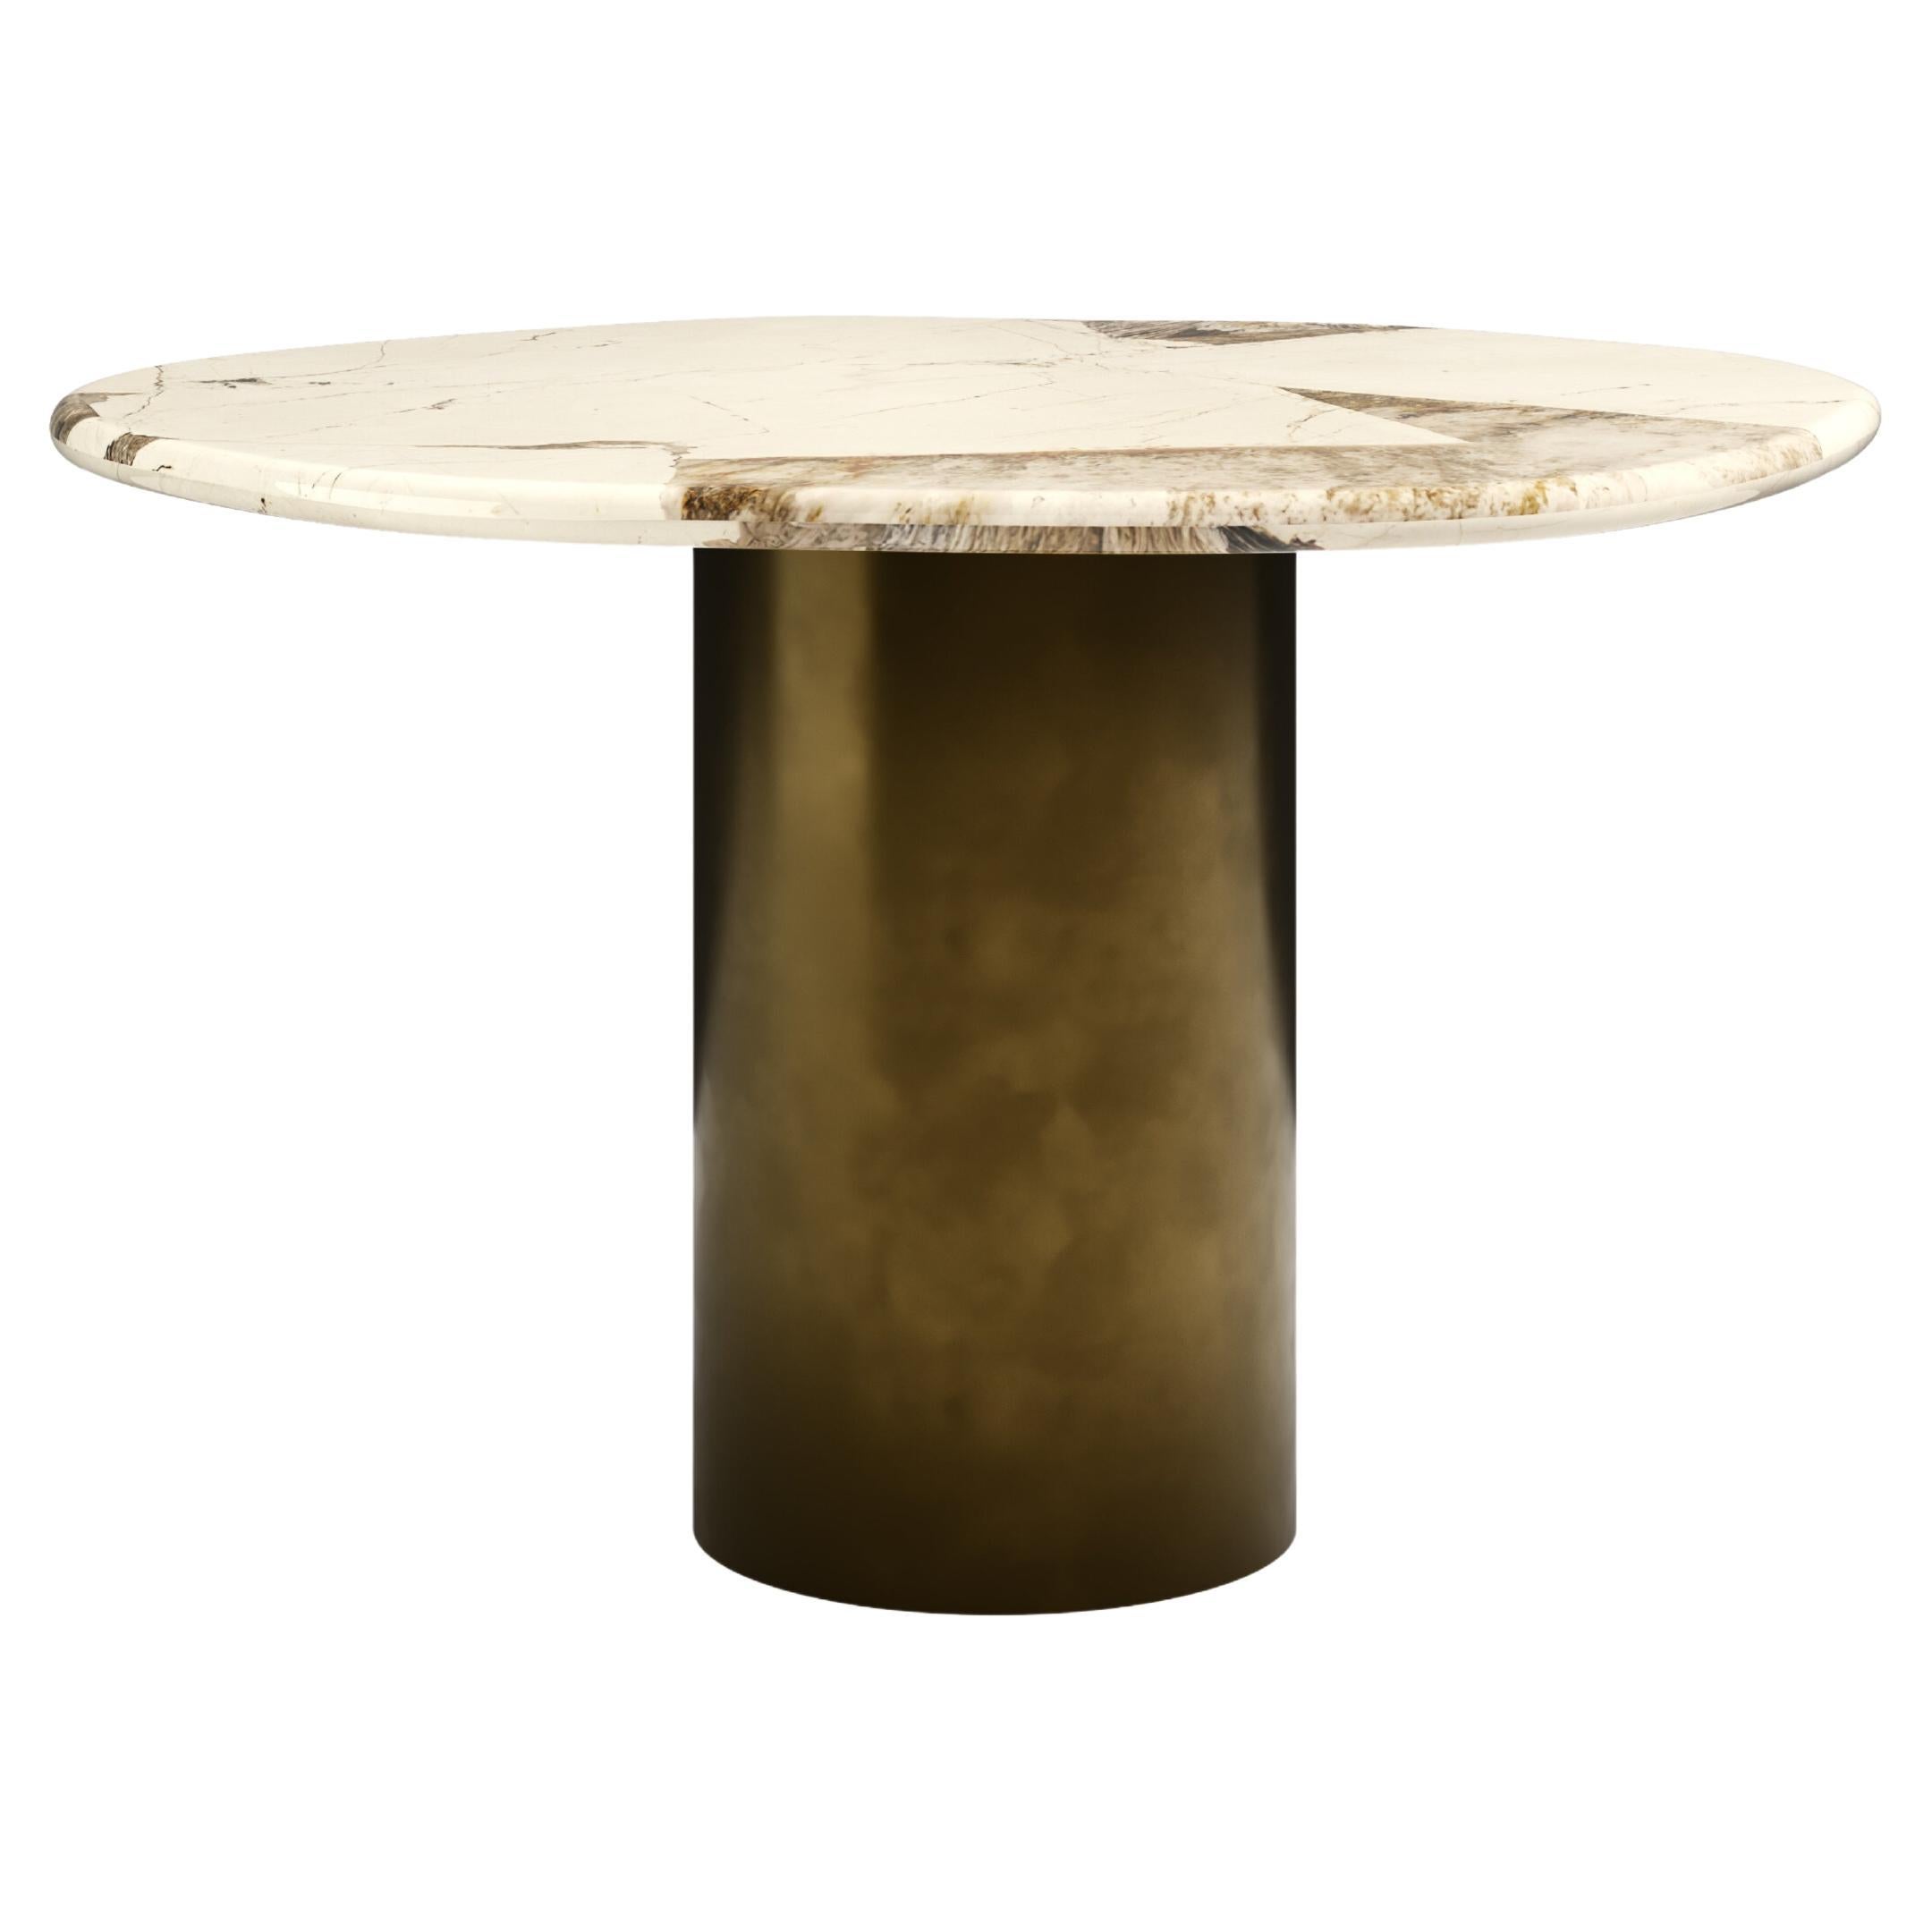 FORM(LA) Lago Round Dining Table 36”L x 36”W x 30”H Quartzite & Antique Bronze